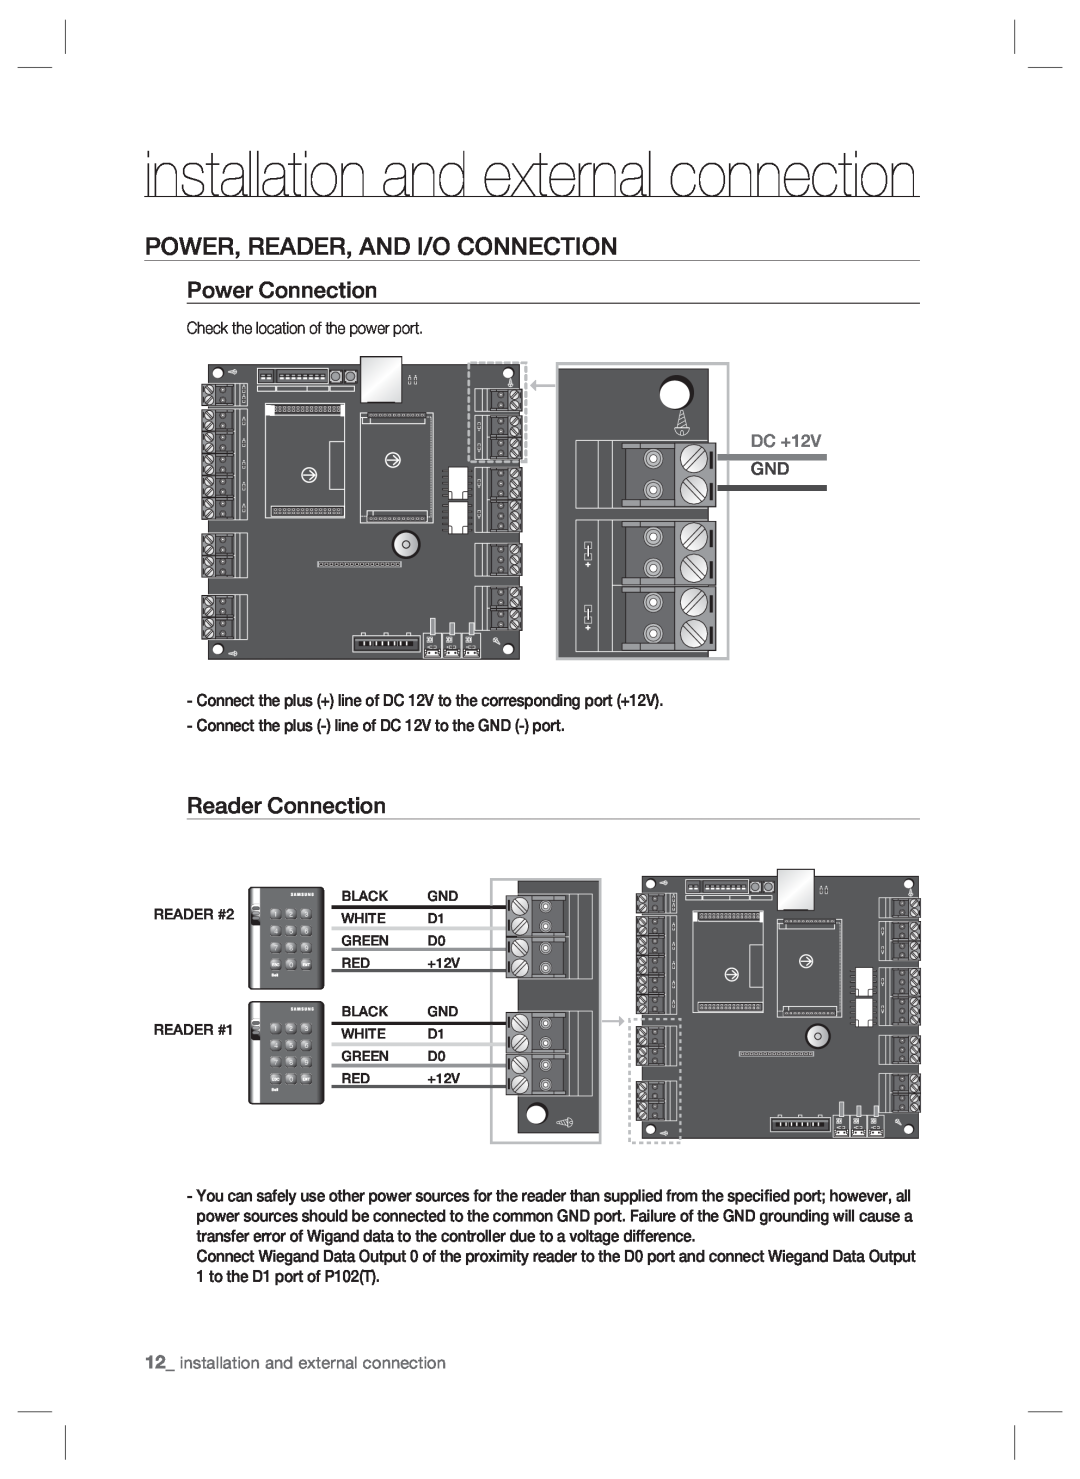 Samsung SSA-P102T user manual Power, Reader, And I/O Connection, Power Connection, Reader Connection, DC +12V 